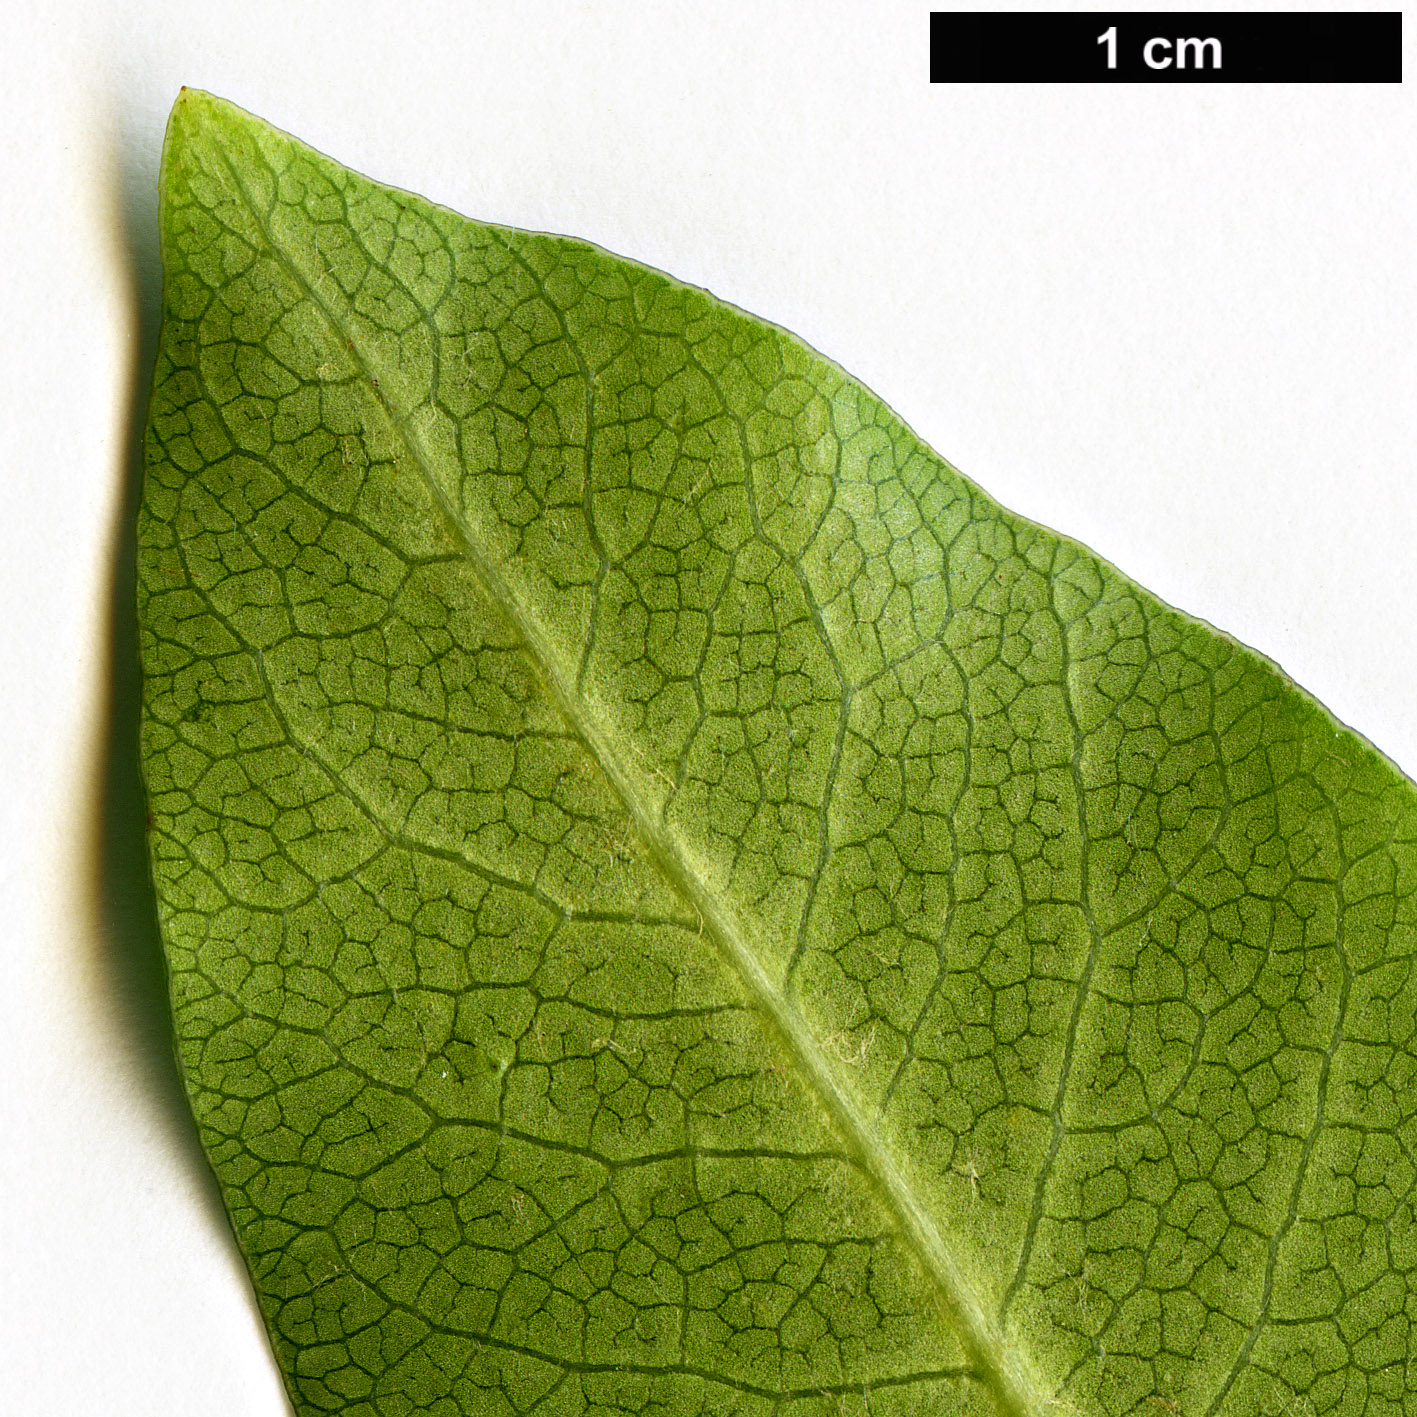 High resolution image: Family: Pittosporaceae - Genus: Pittosporum - Taxon: fasciculatum